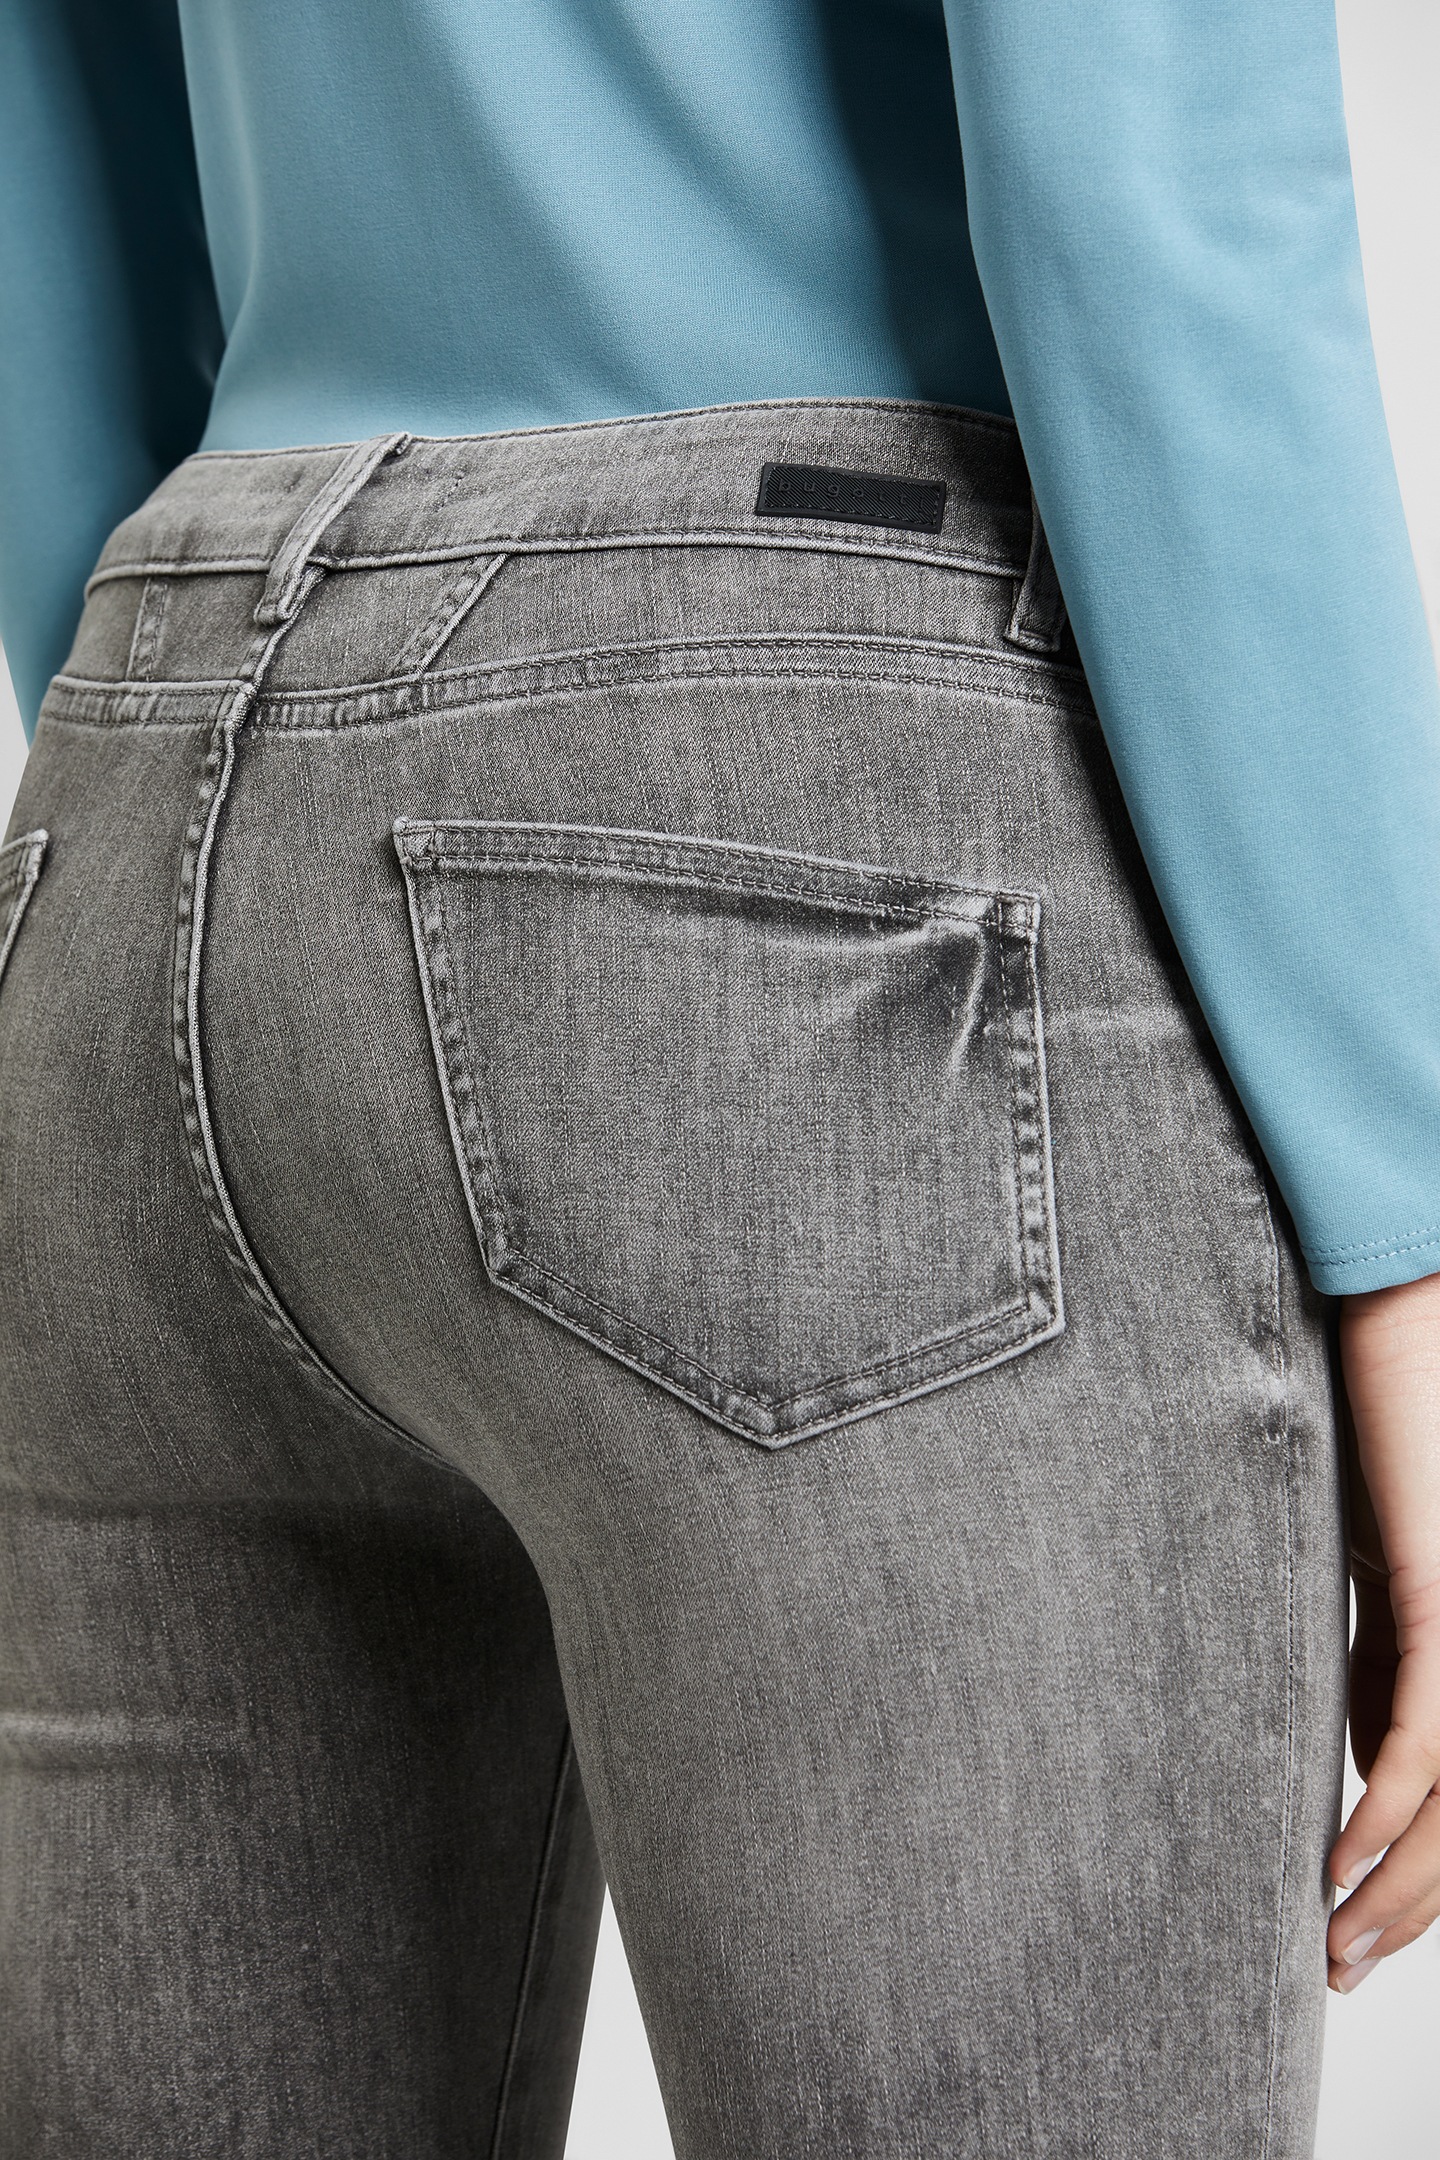 online Used-Waschung 5-Pocket-Jeans, leichte bugatti